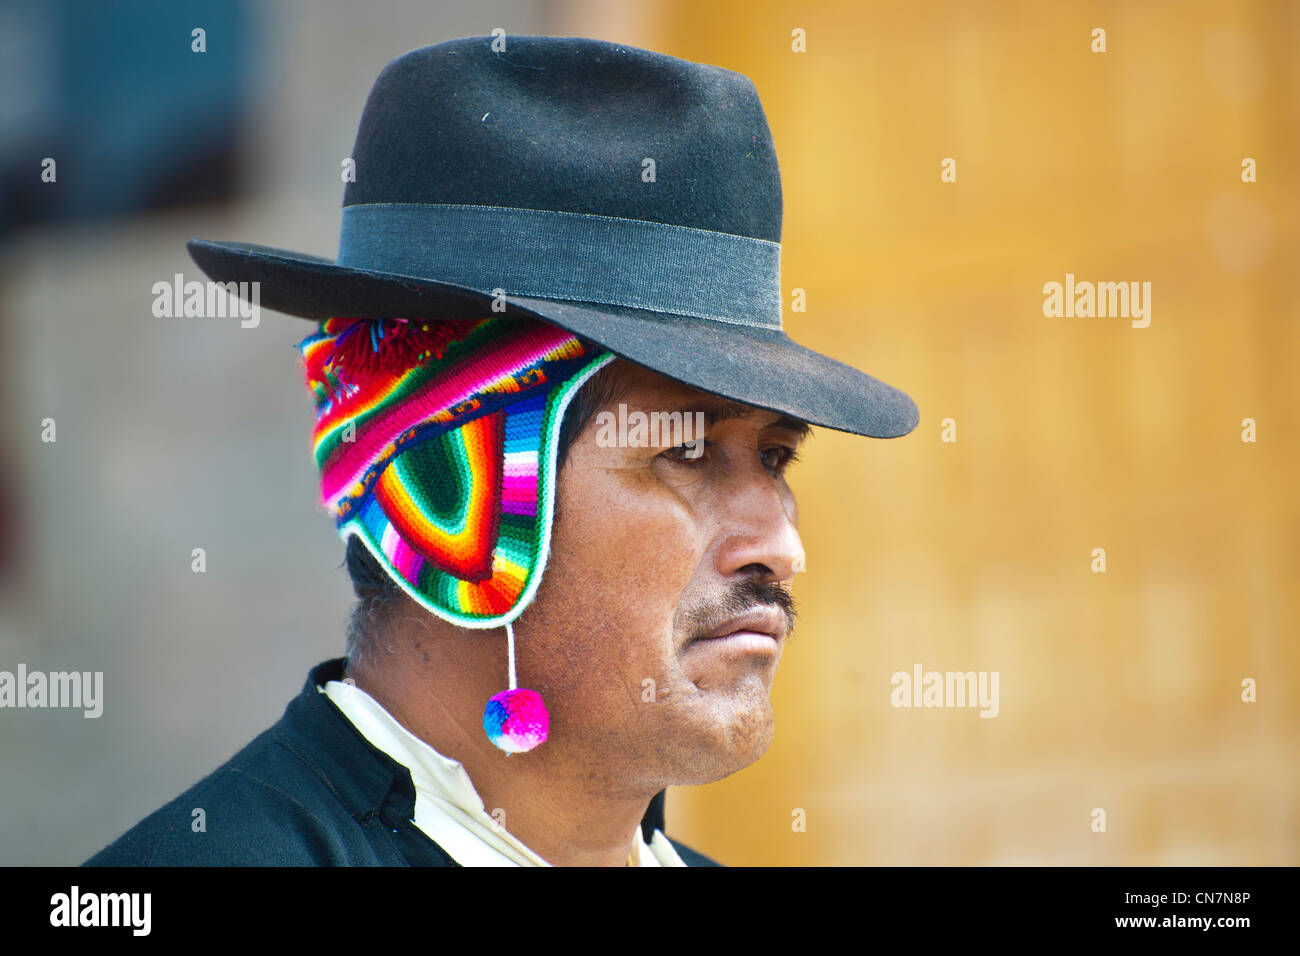 Peru, Provinz Puno, Titicacasee, Insel Taquile, die Quechua-Indianer haben fern des Kontinents eine traditionelle Lebensweise Stockfoto